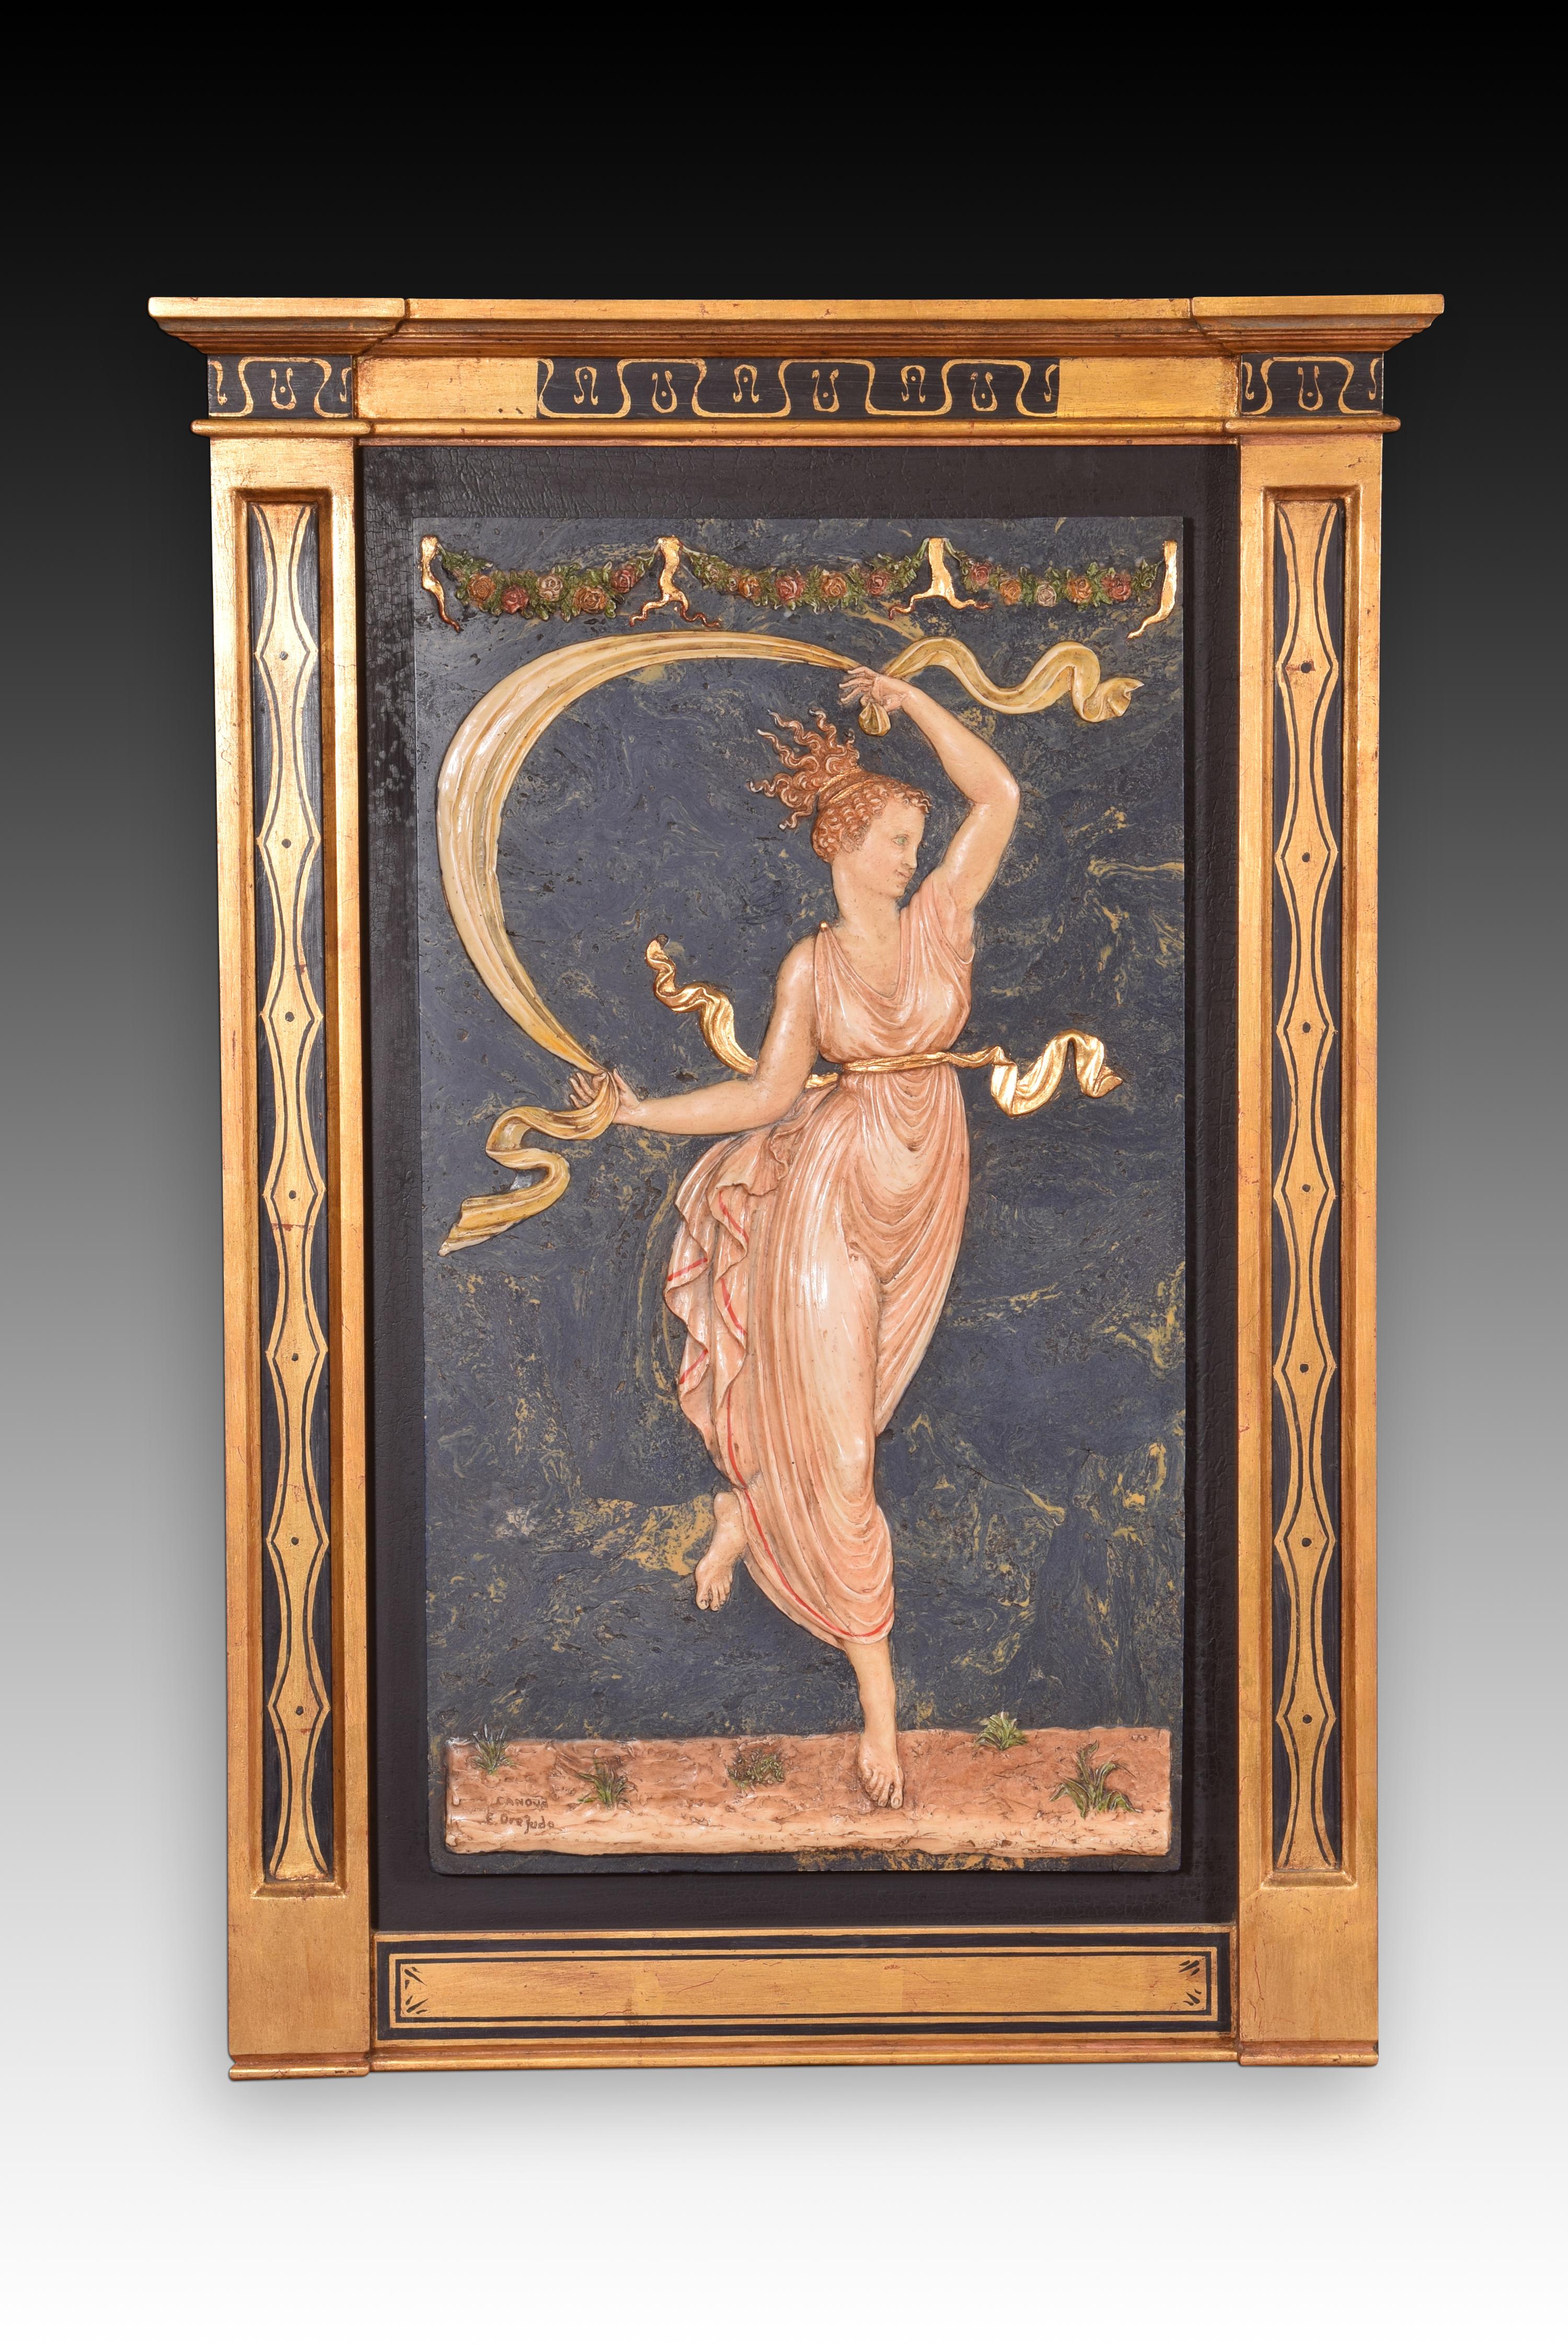 Tafelbildpaar, Tänzer. Geformter Alabaster. 20. Jahrhundert, inspiriert von CANOVA, Antonio (1757-1822). 
Ein Paar Reliefs mit Rahmen aus Alabaster, der mit Polychromie geformt ist, inspiriert von den Reliefs, die zwei tanzende Jugendliche in einem